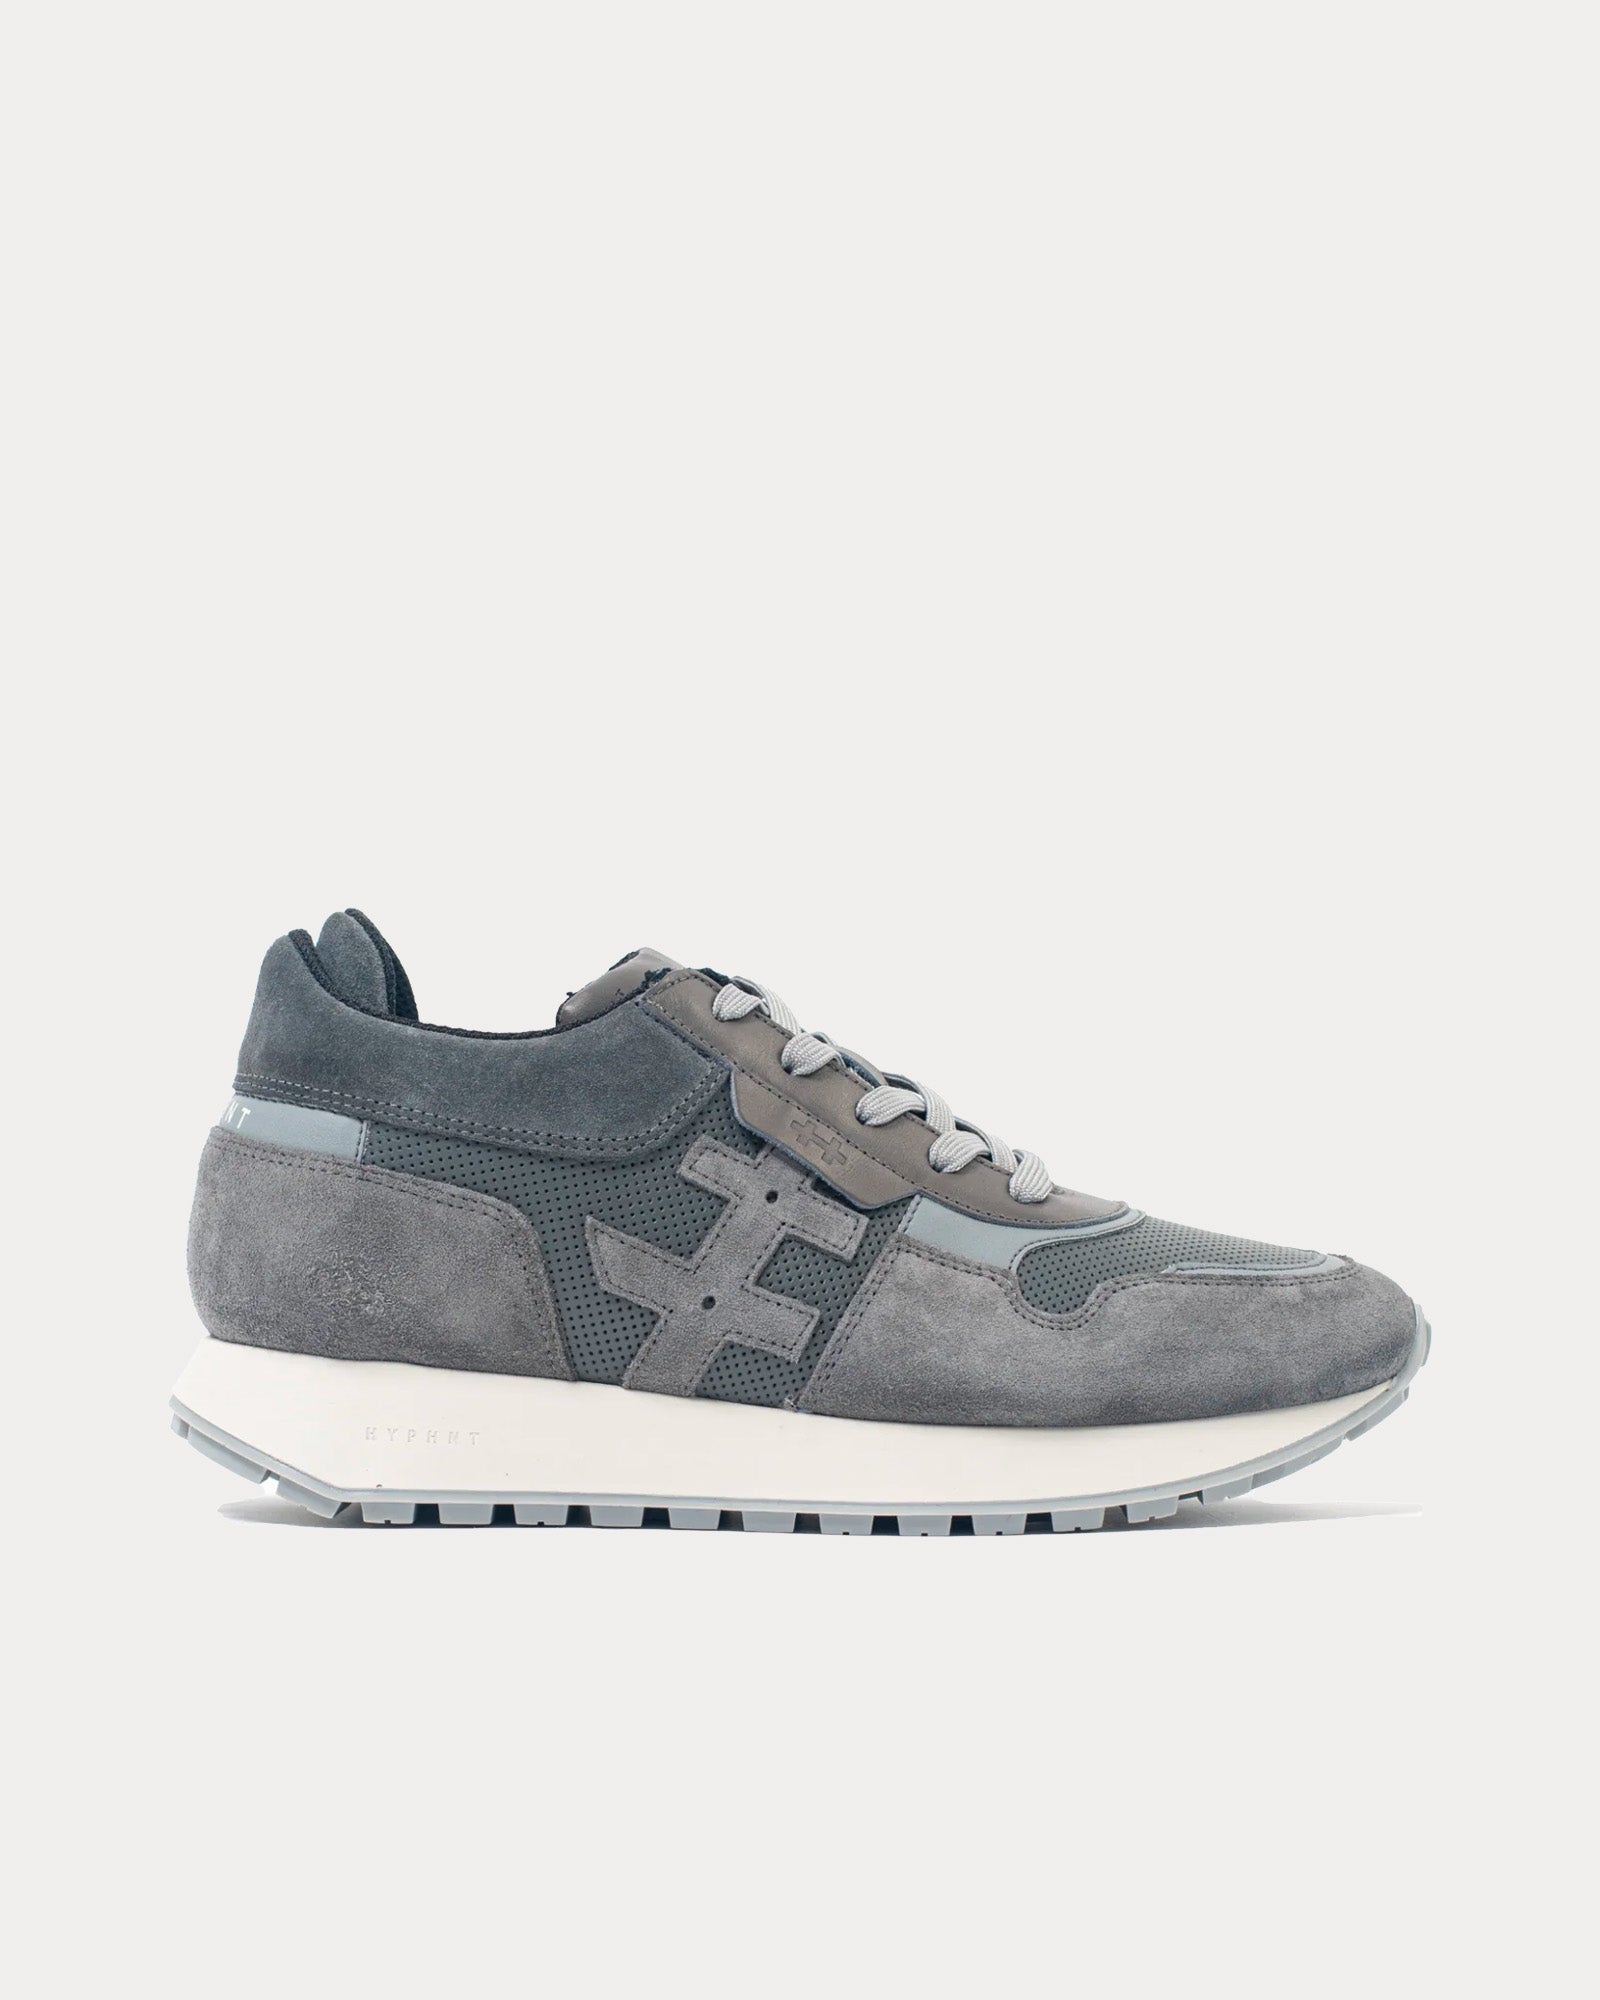 Hyphnt - Road Runner Dark Ice Grey Low Top Sneakers